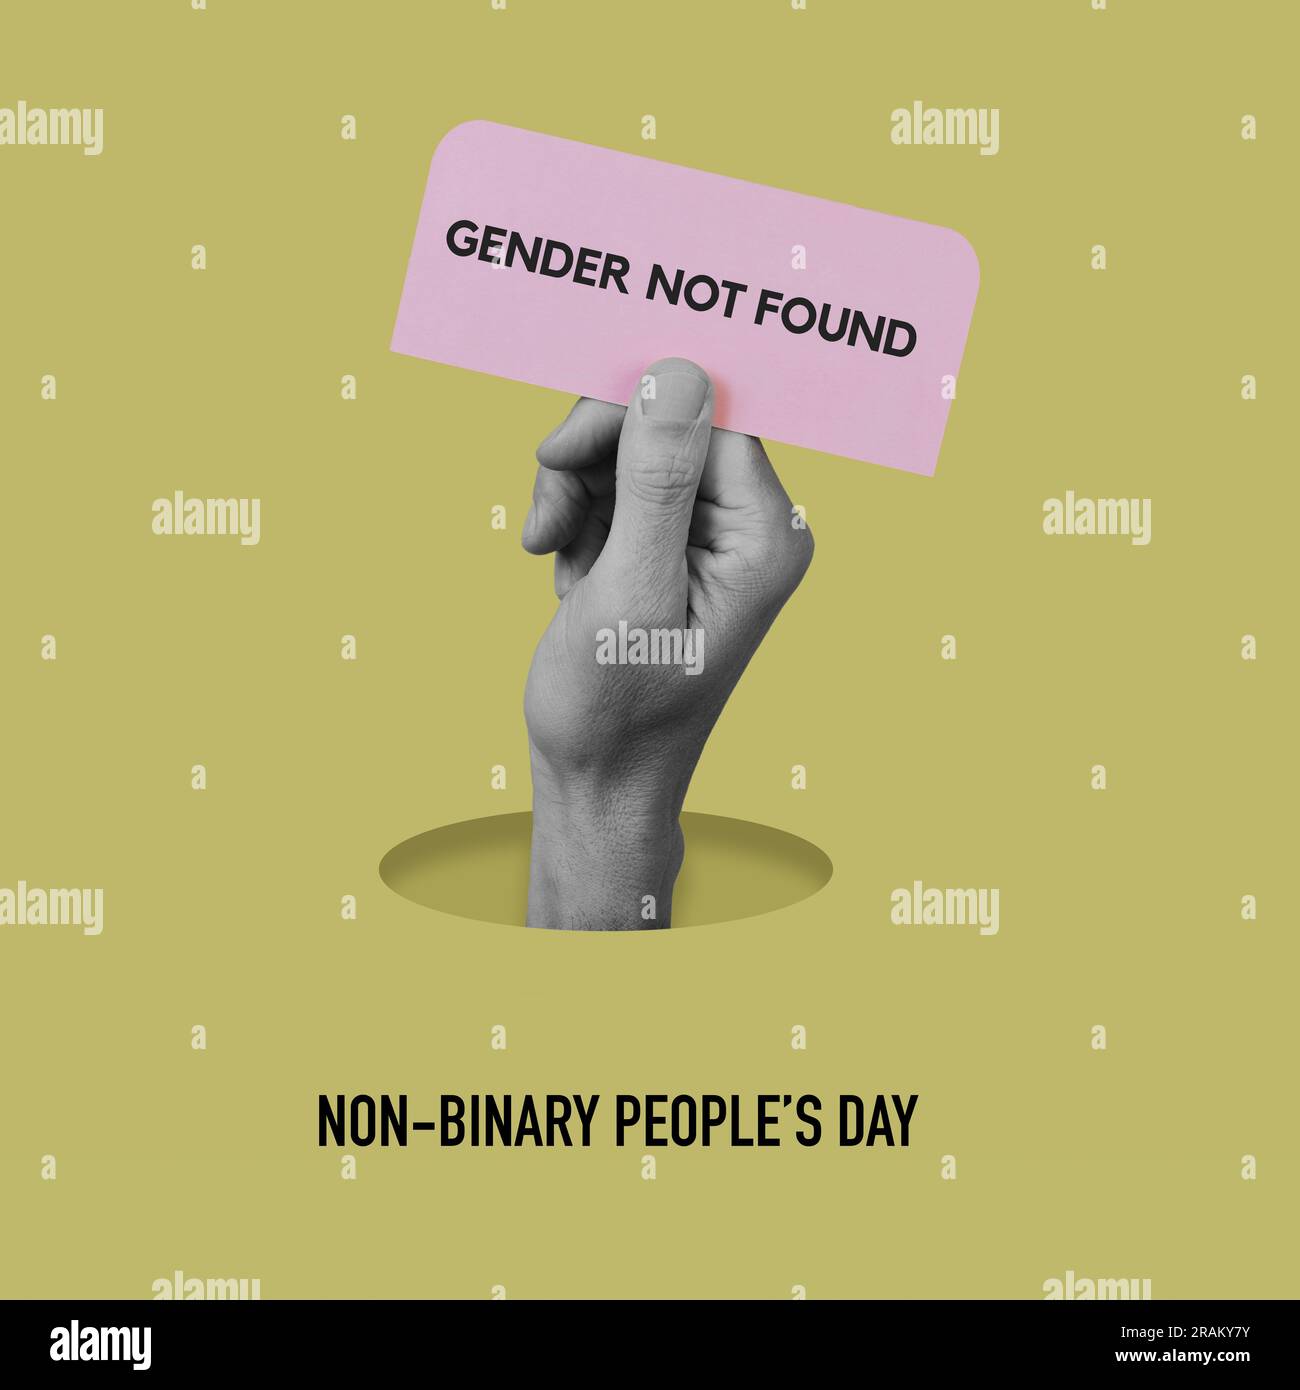 Der Text nicht-binäre Personen Tag und eine Hand in Schwarz-Weiß mit einem rosafarbenen Schild mit dem Text Geschlecht nicht gefunden auf gelbem Hintergrund Stockfoto